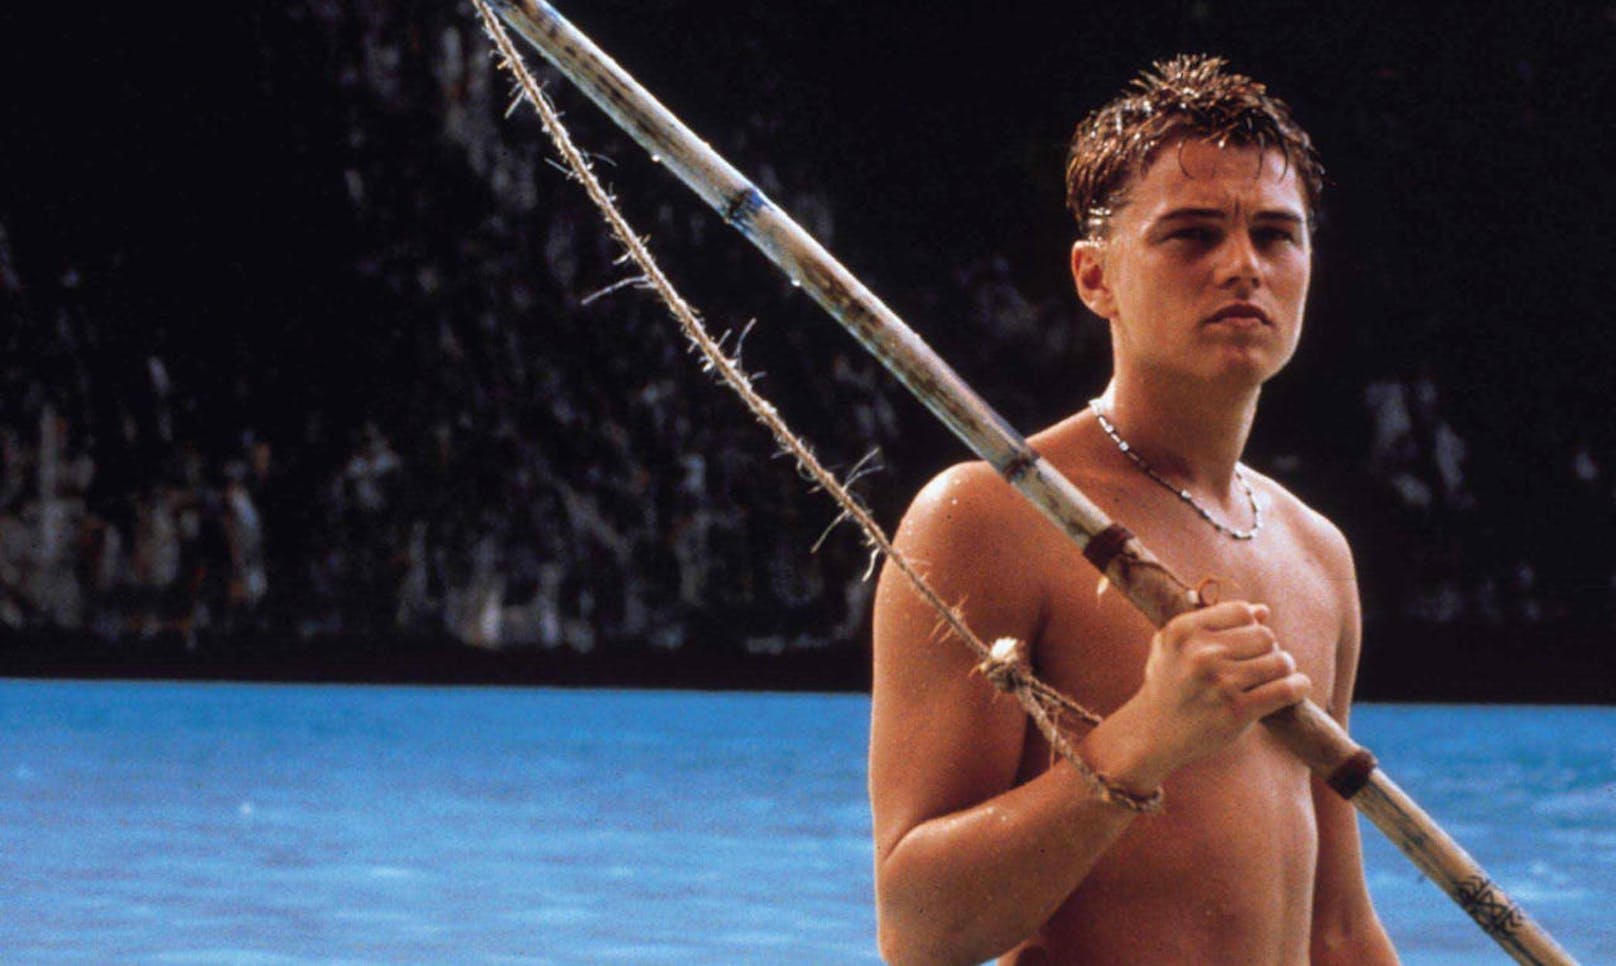 "The Beach" erschien im Jahr 2000 und war - nicht nur dank Leonardo Di Caprio - ein weltweiter Kinohit. Der Film traf den Nerv der Zeit und machte Thailand zum Sehnsuchts-Ziel für Aussteiger.